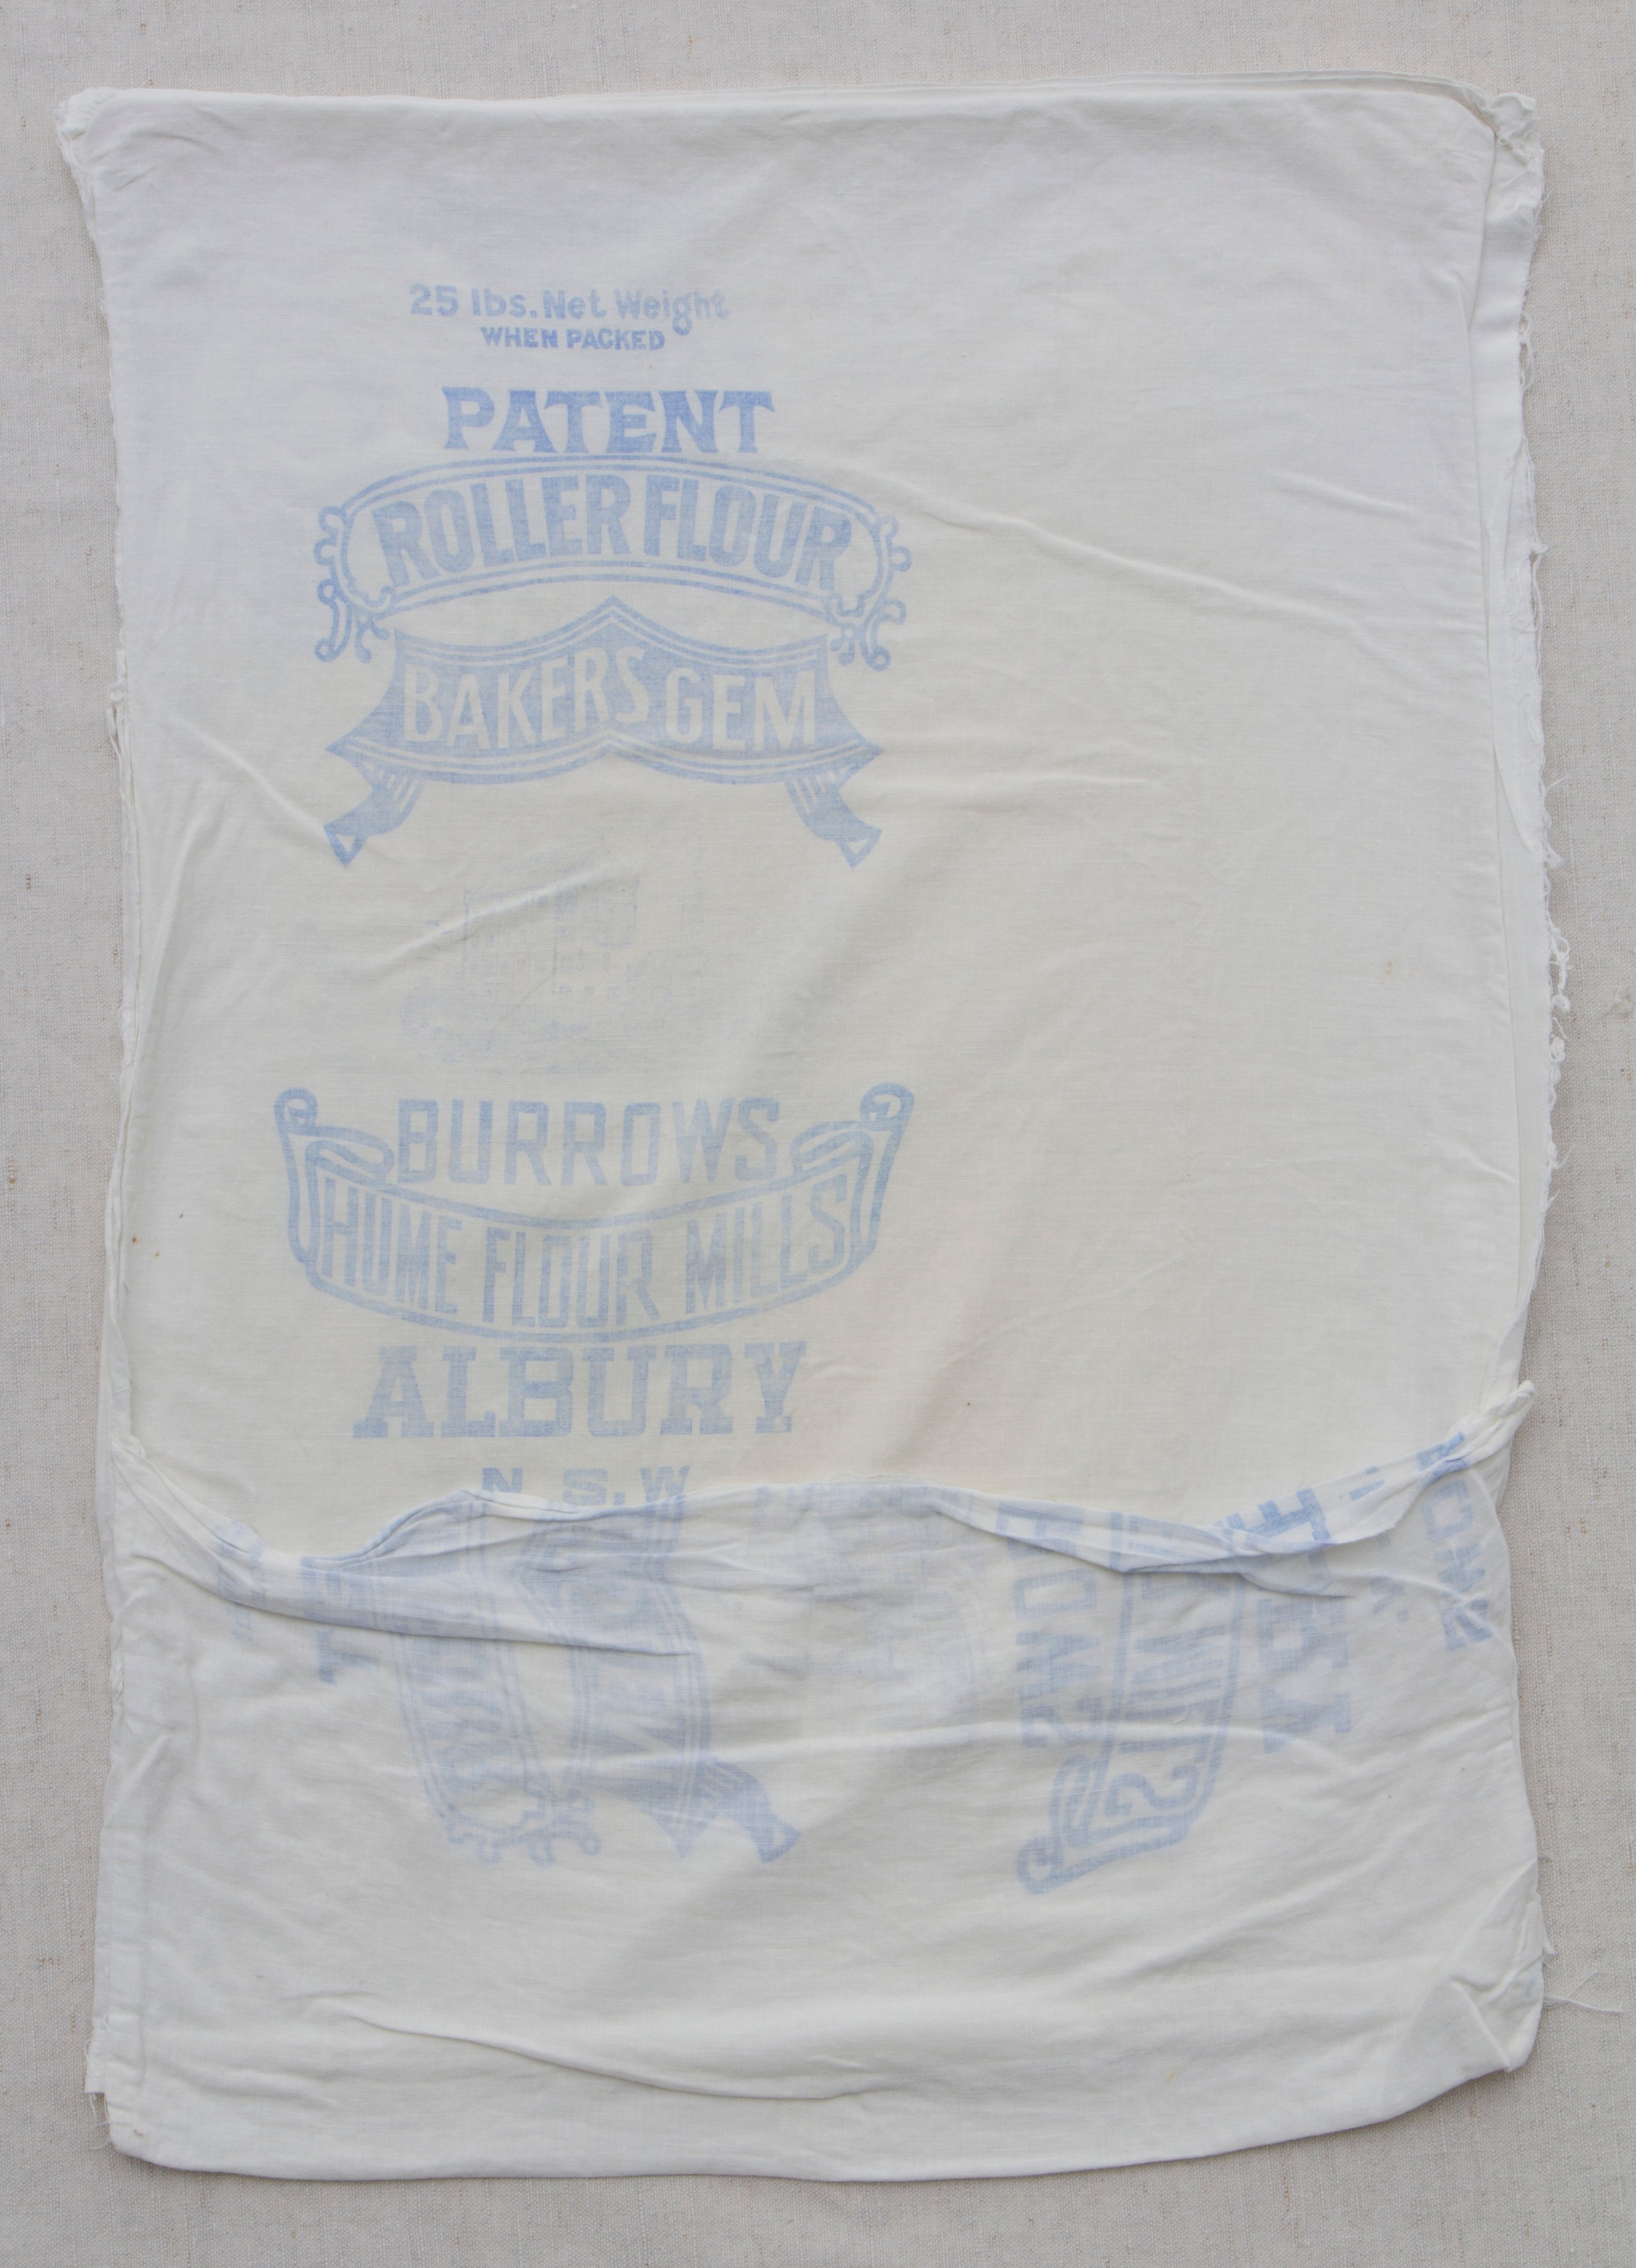 Pillowcase made from an Albury flour mill bag